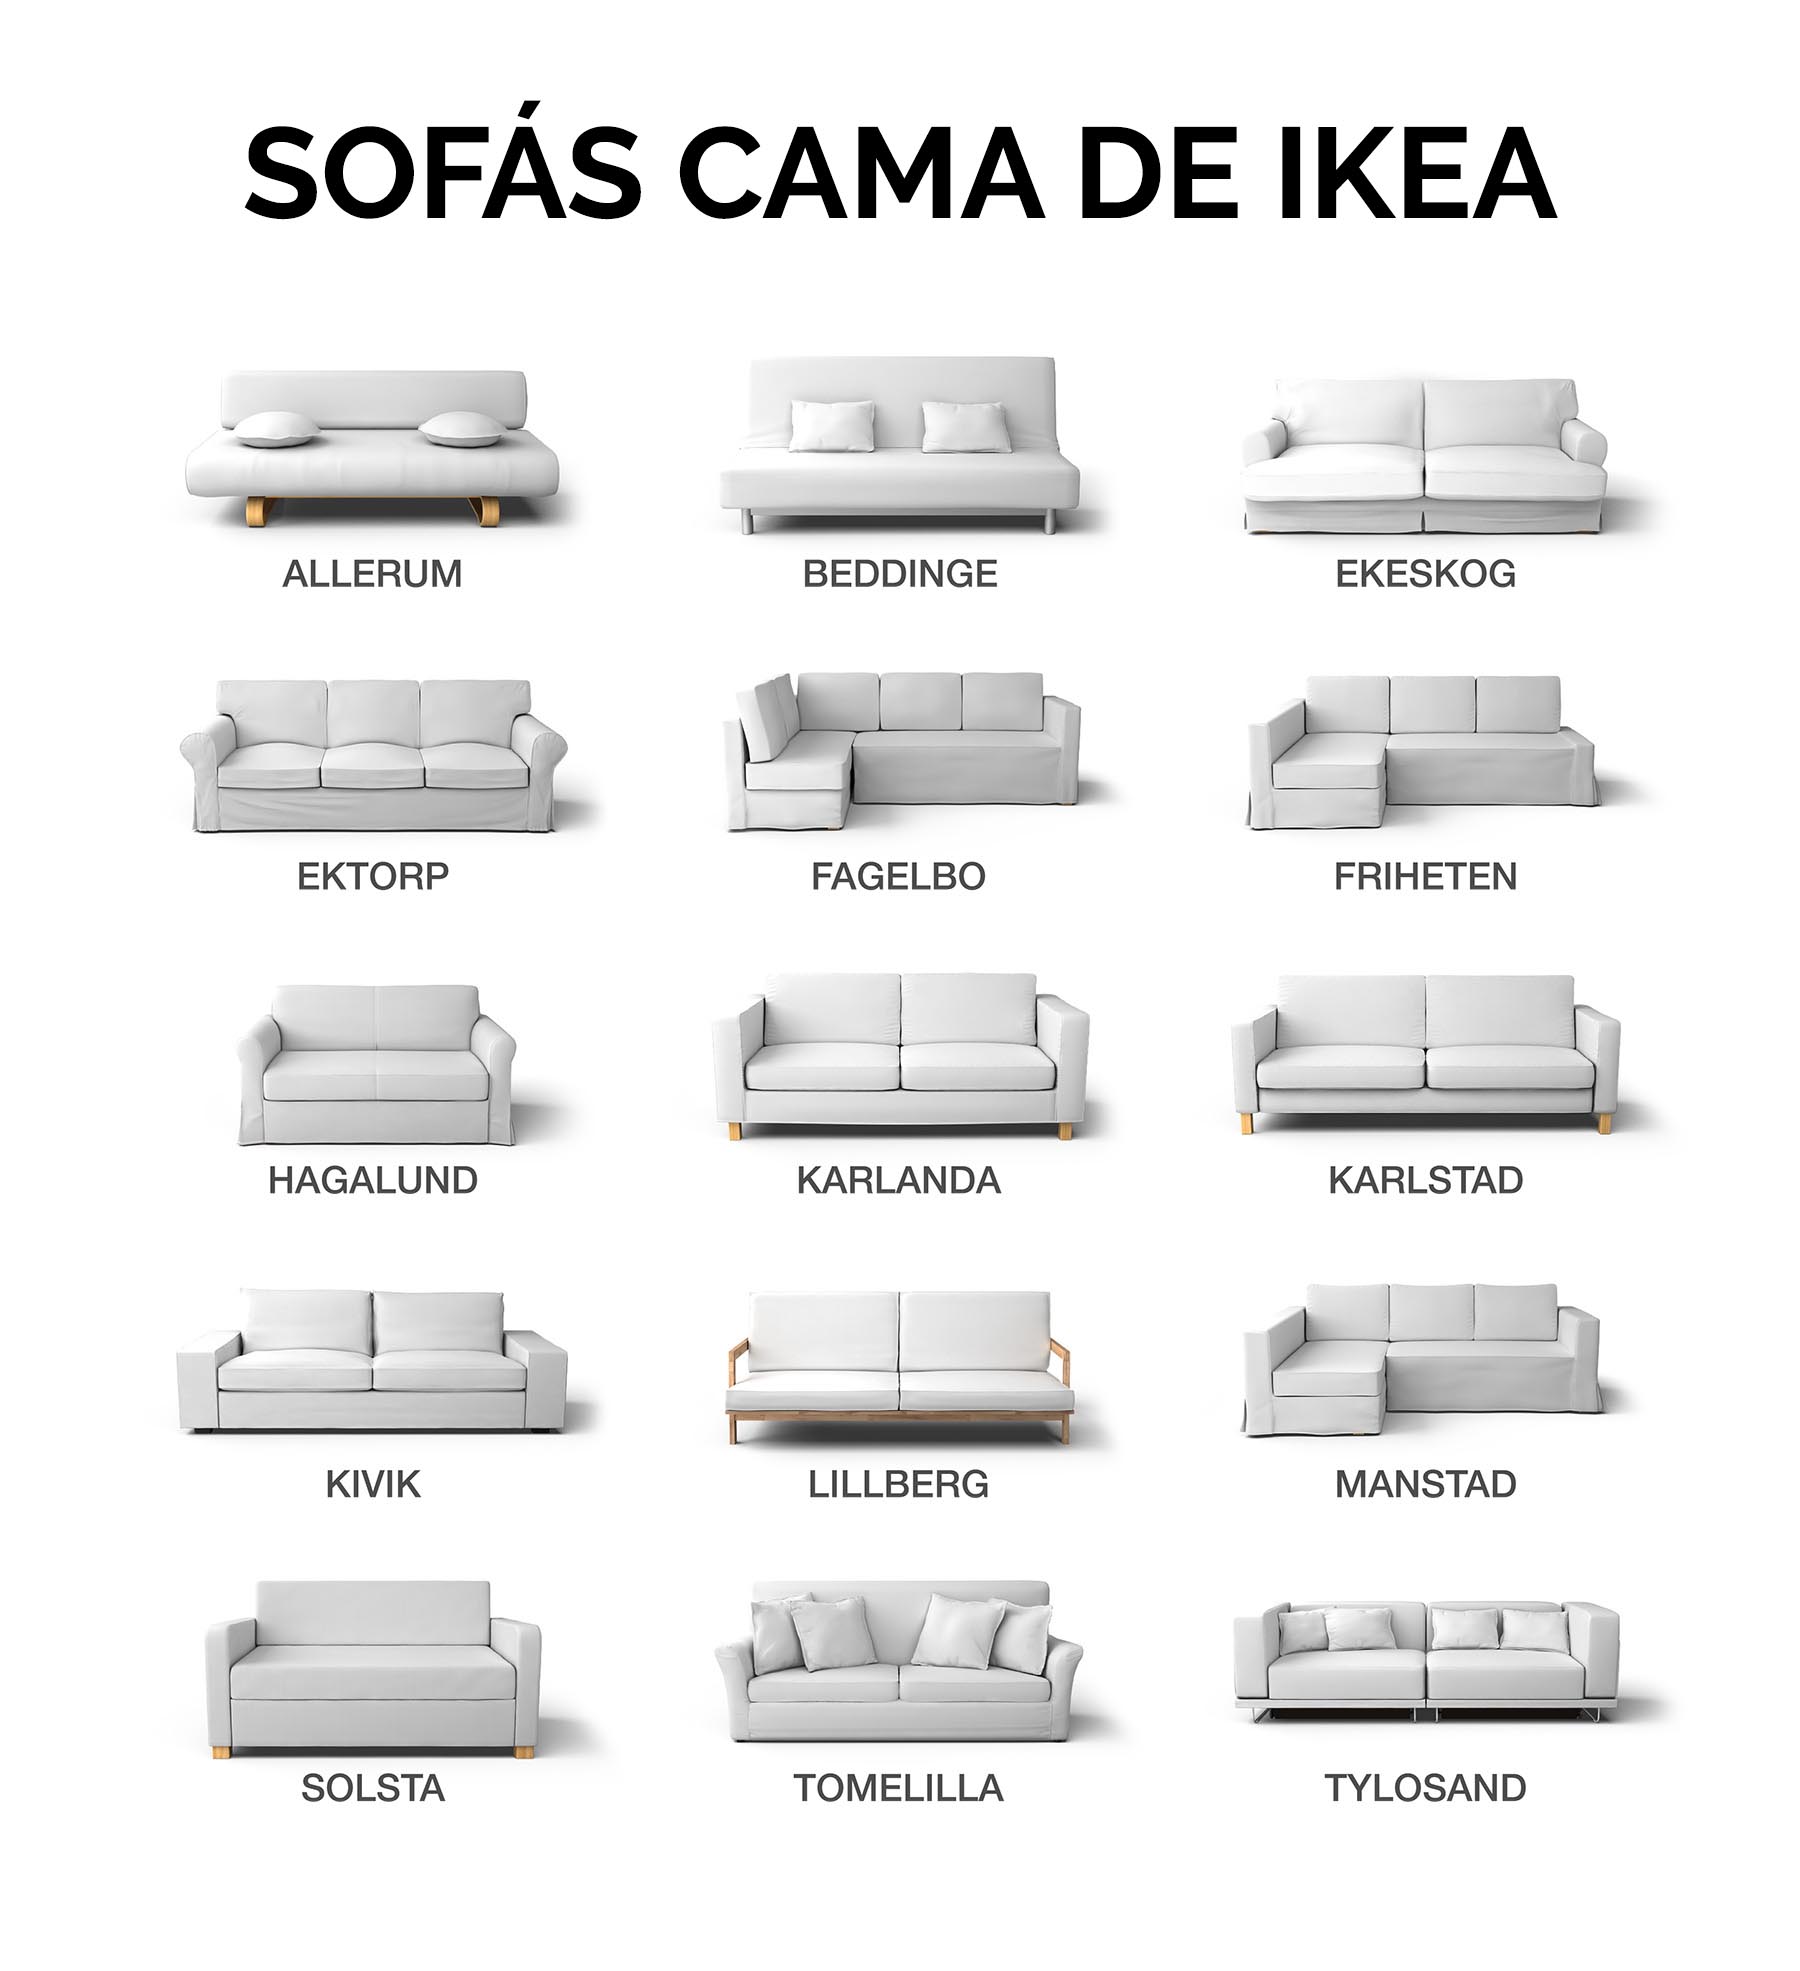 Sofás camas de IKEA de todos los estilos